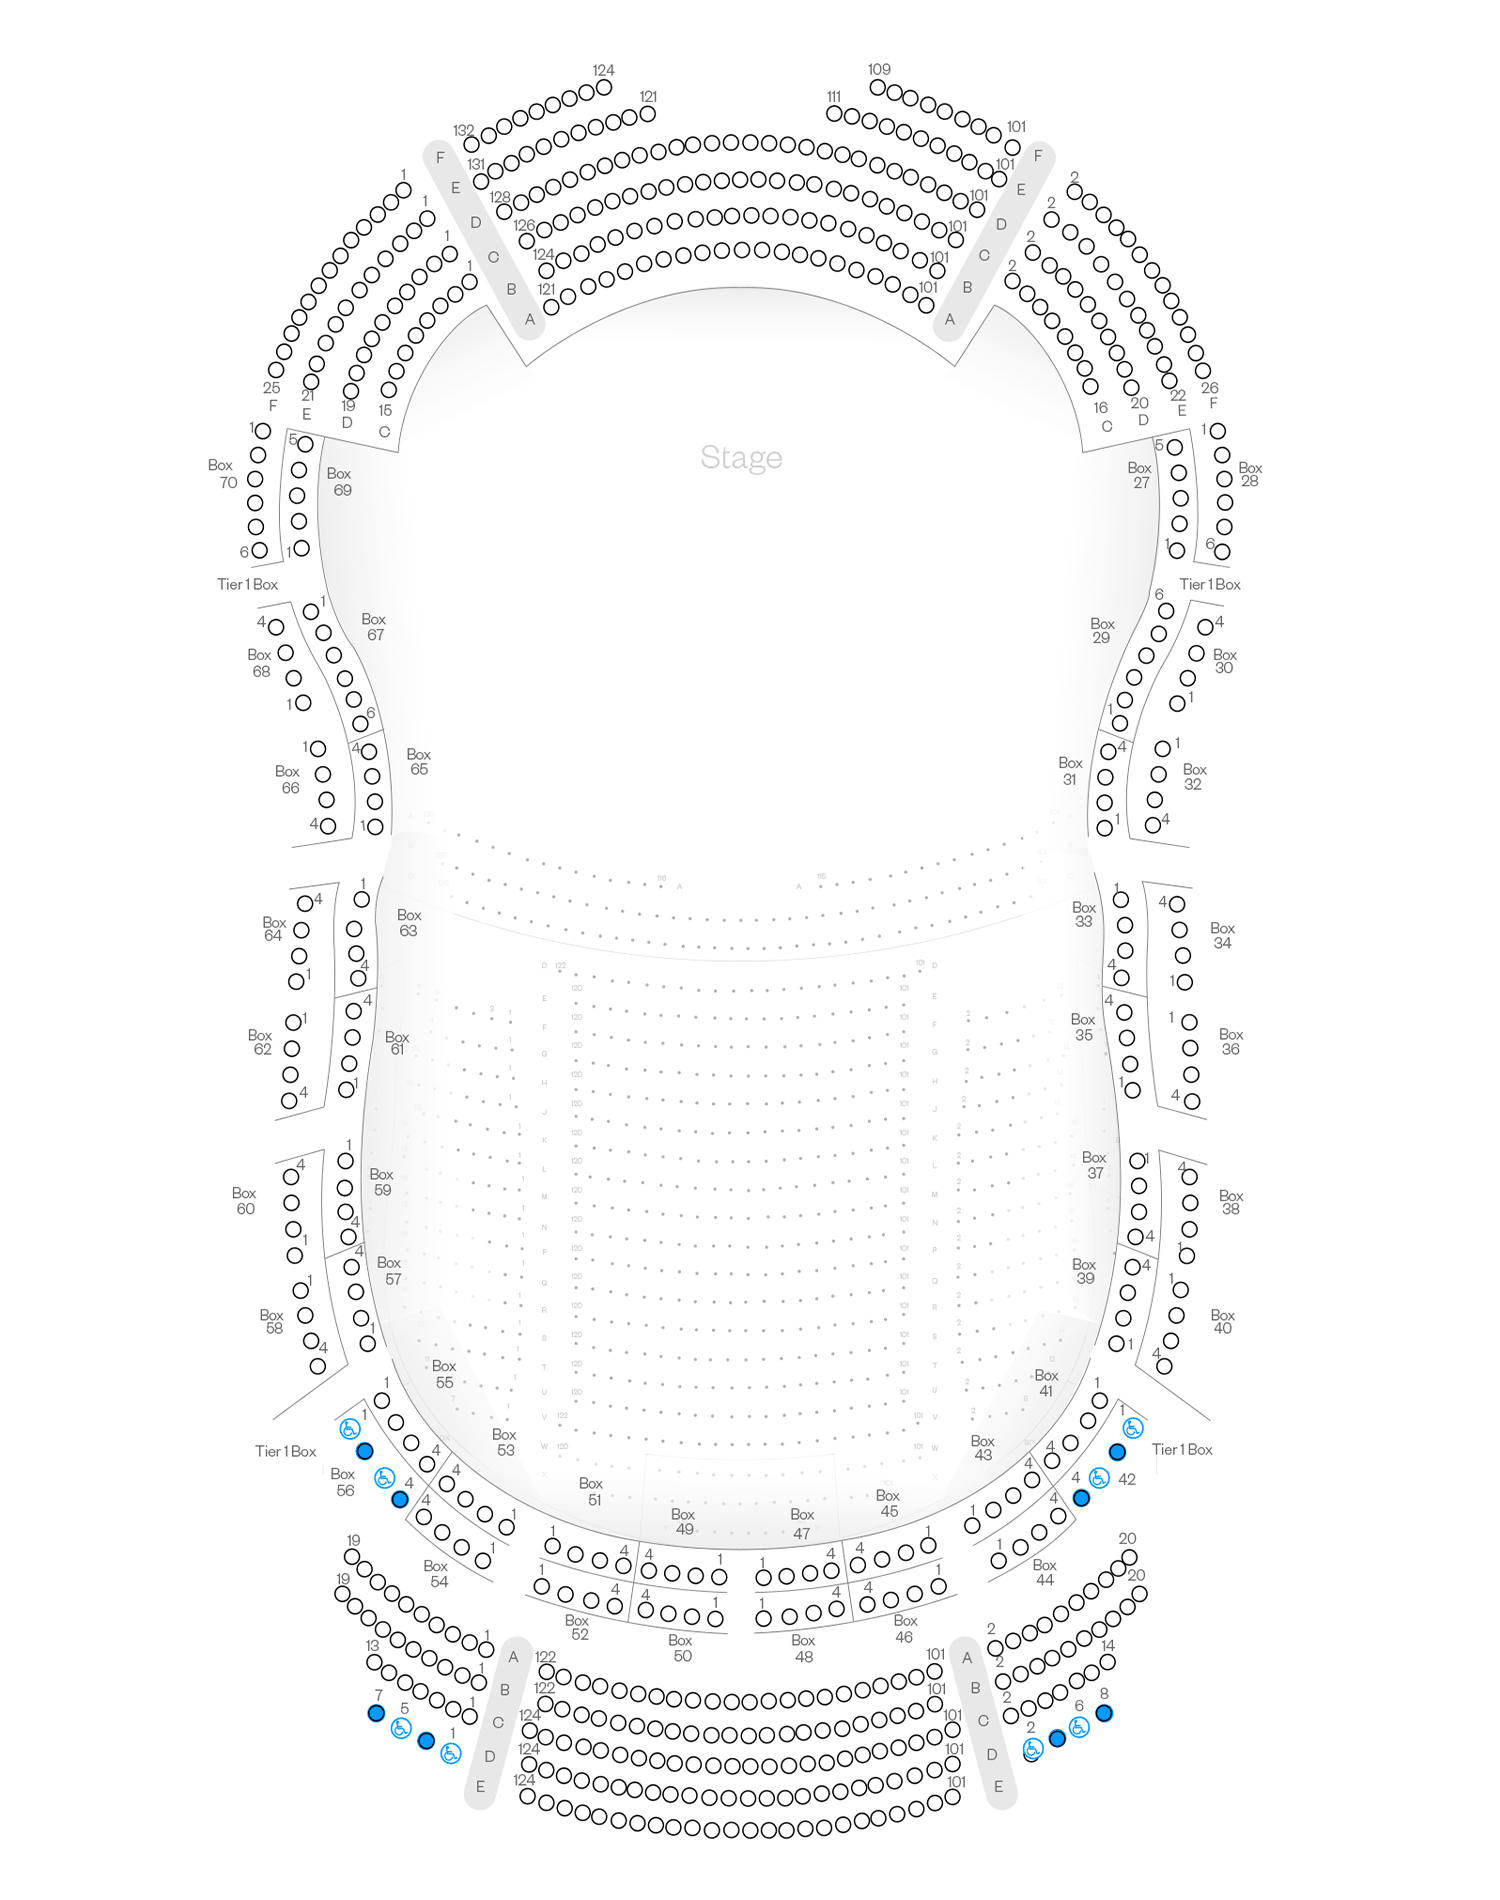 Verizon Hall Tier 1 Seating Chart